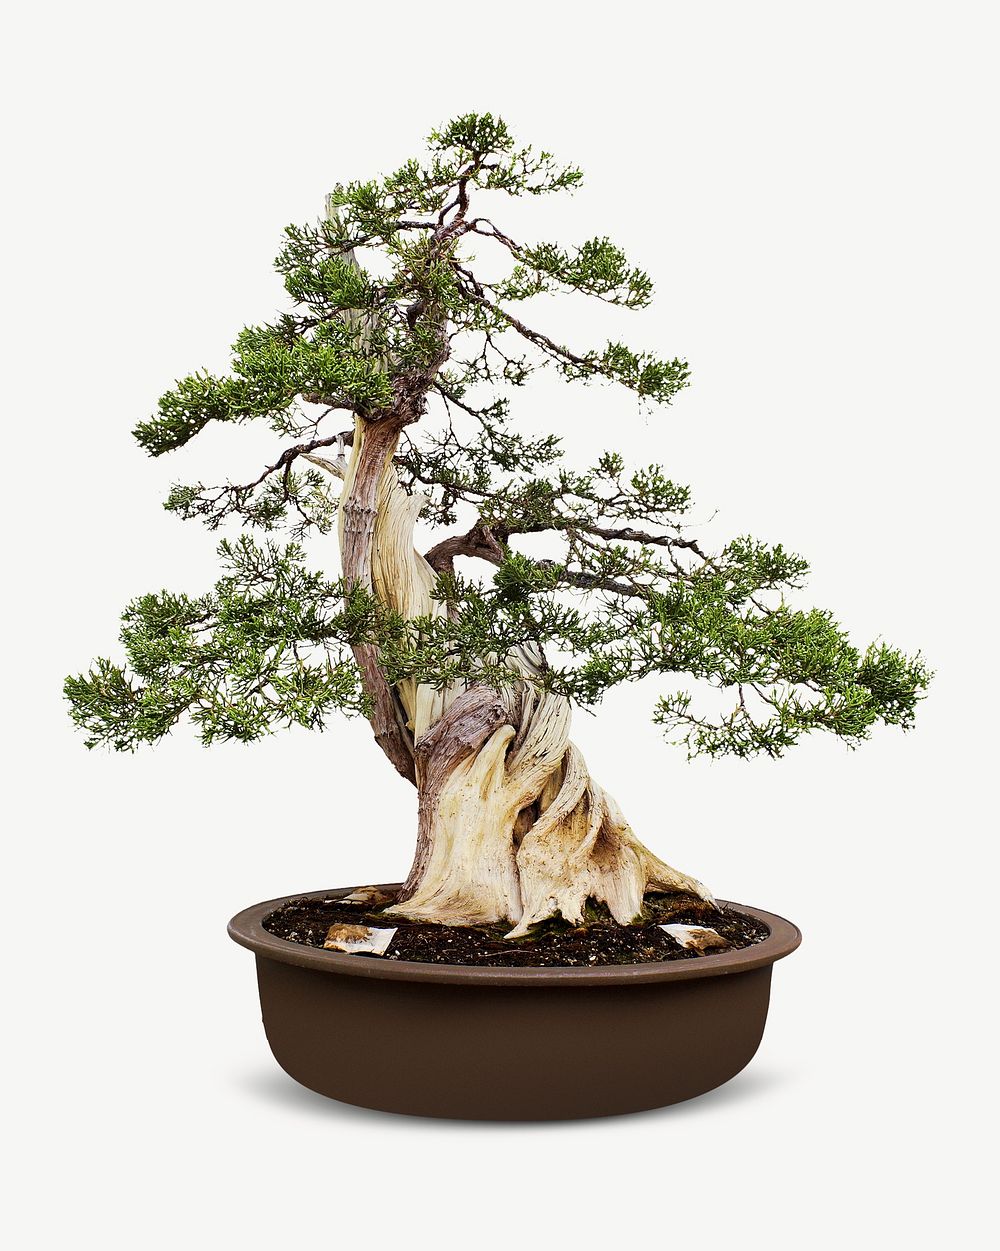 Pot bonsai planting collage element psd 